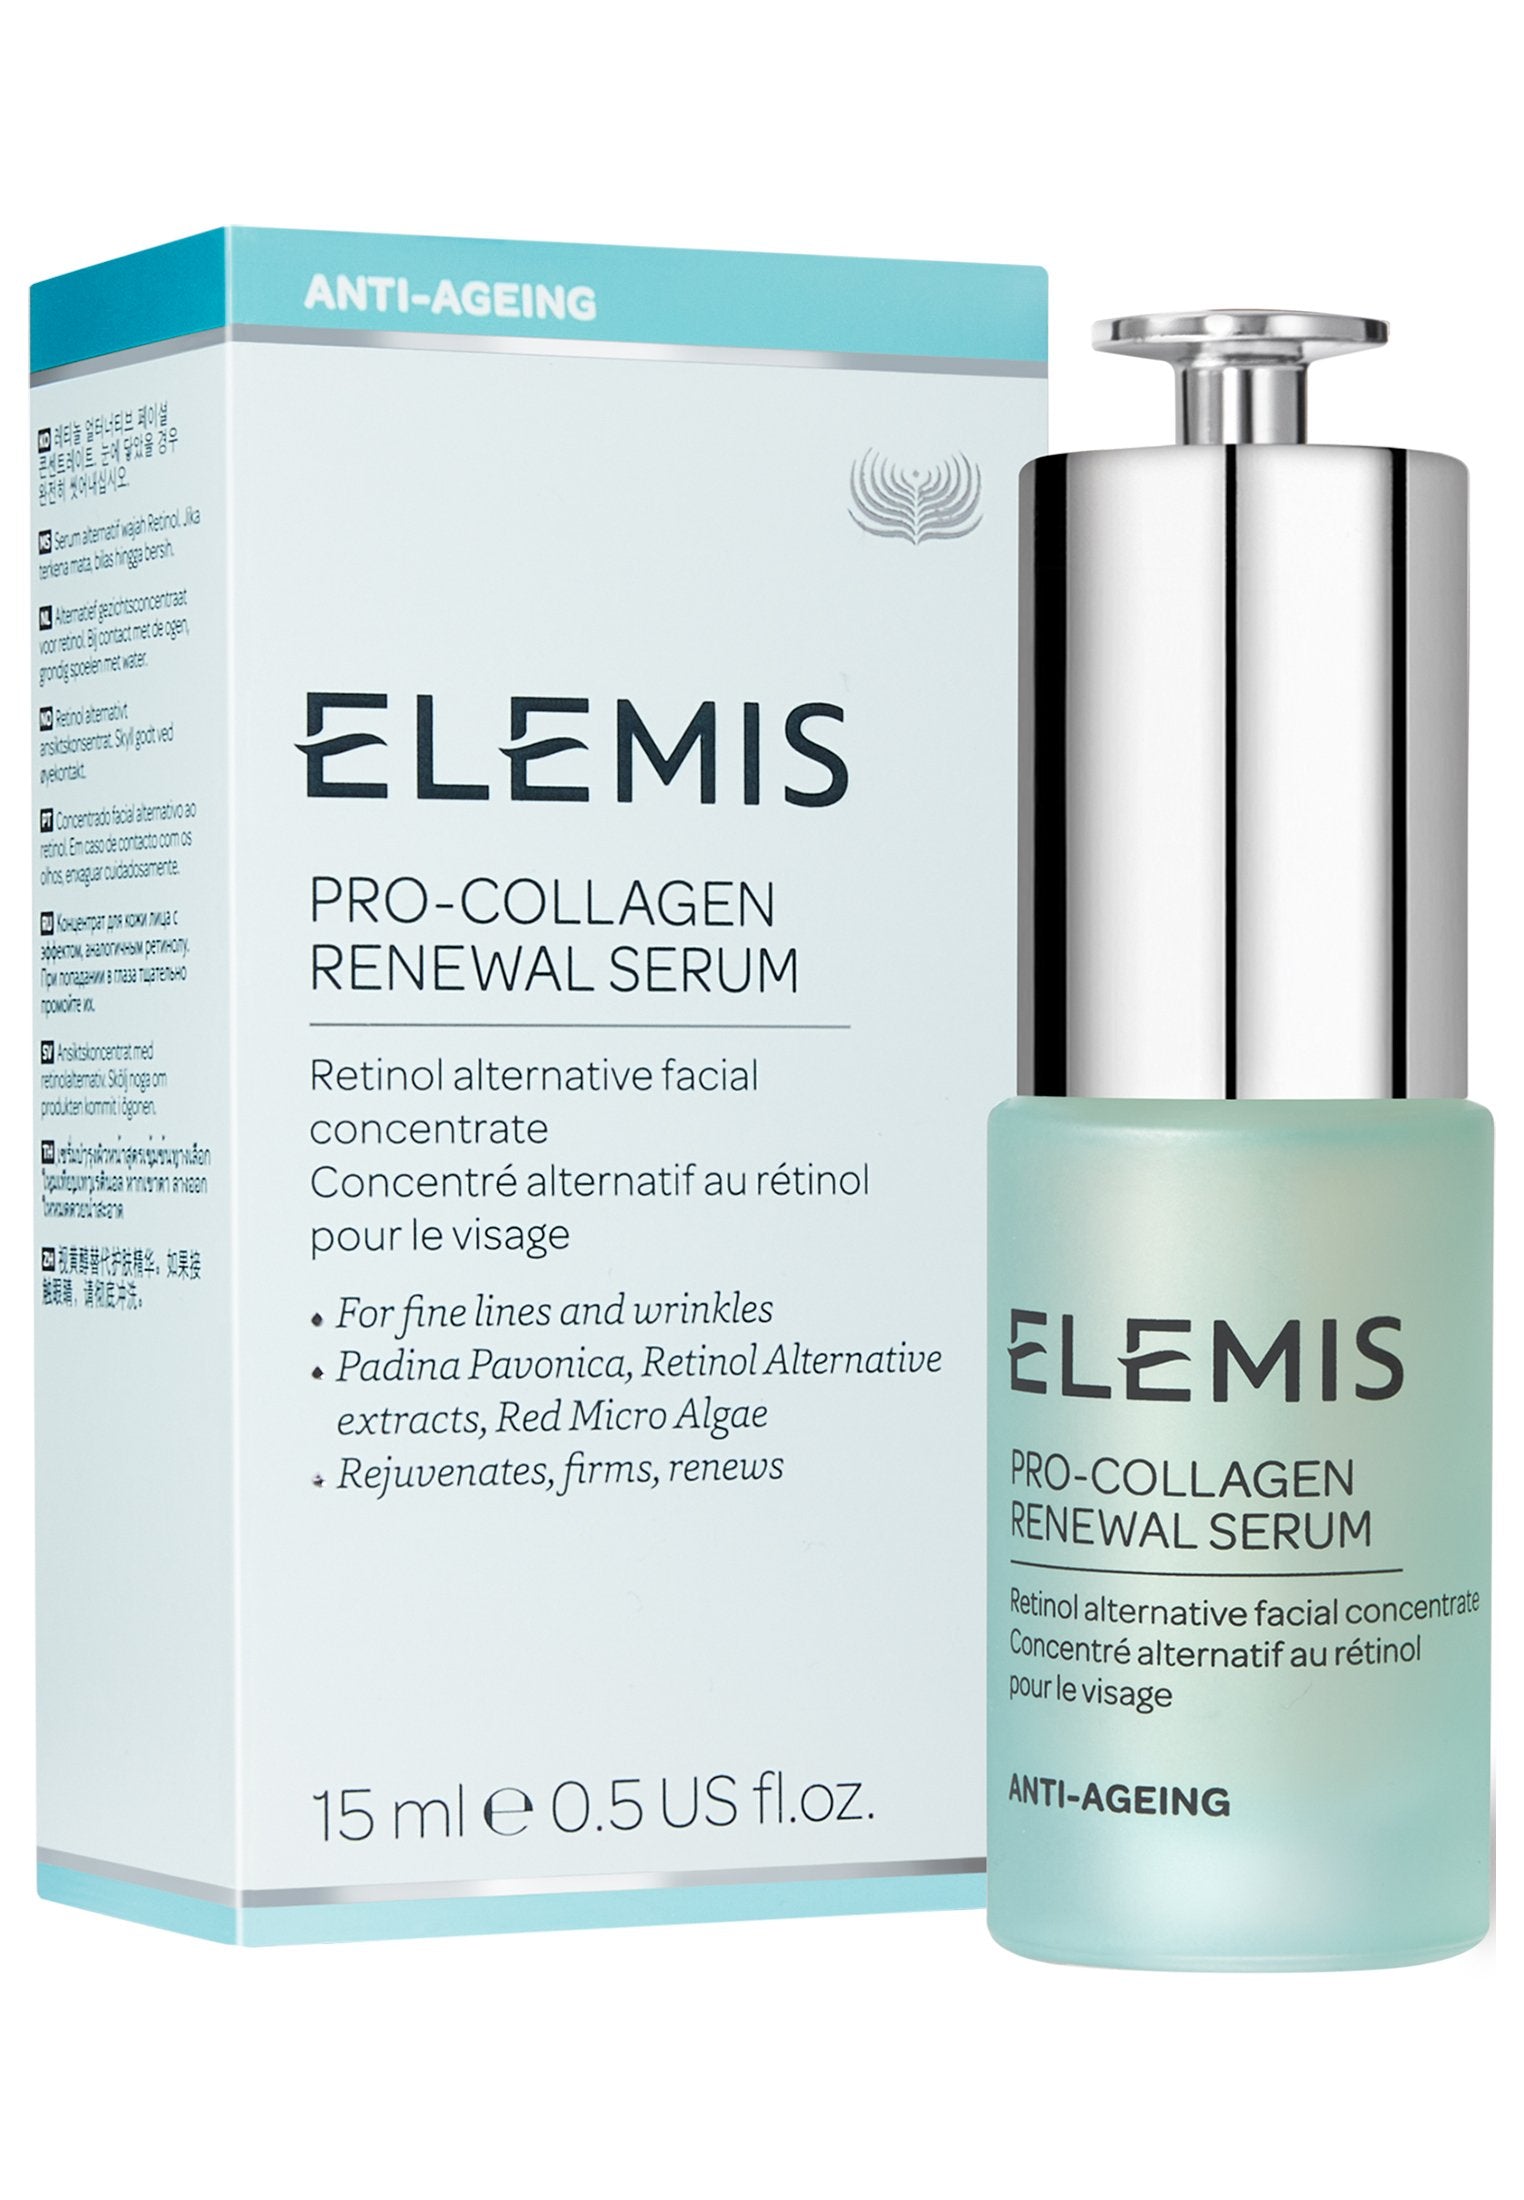 Pro-Collagen Renewal Serum